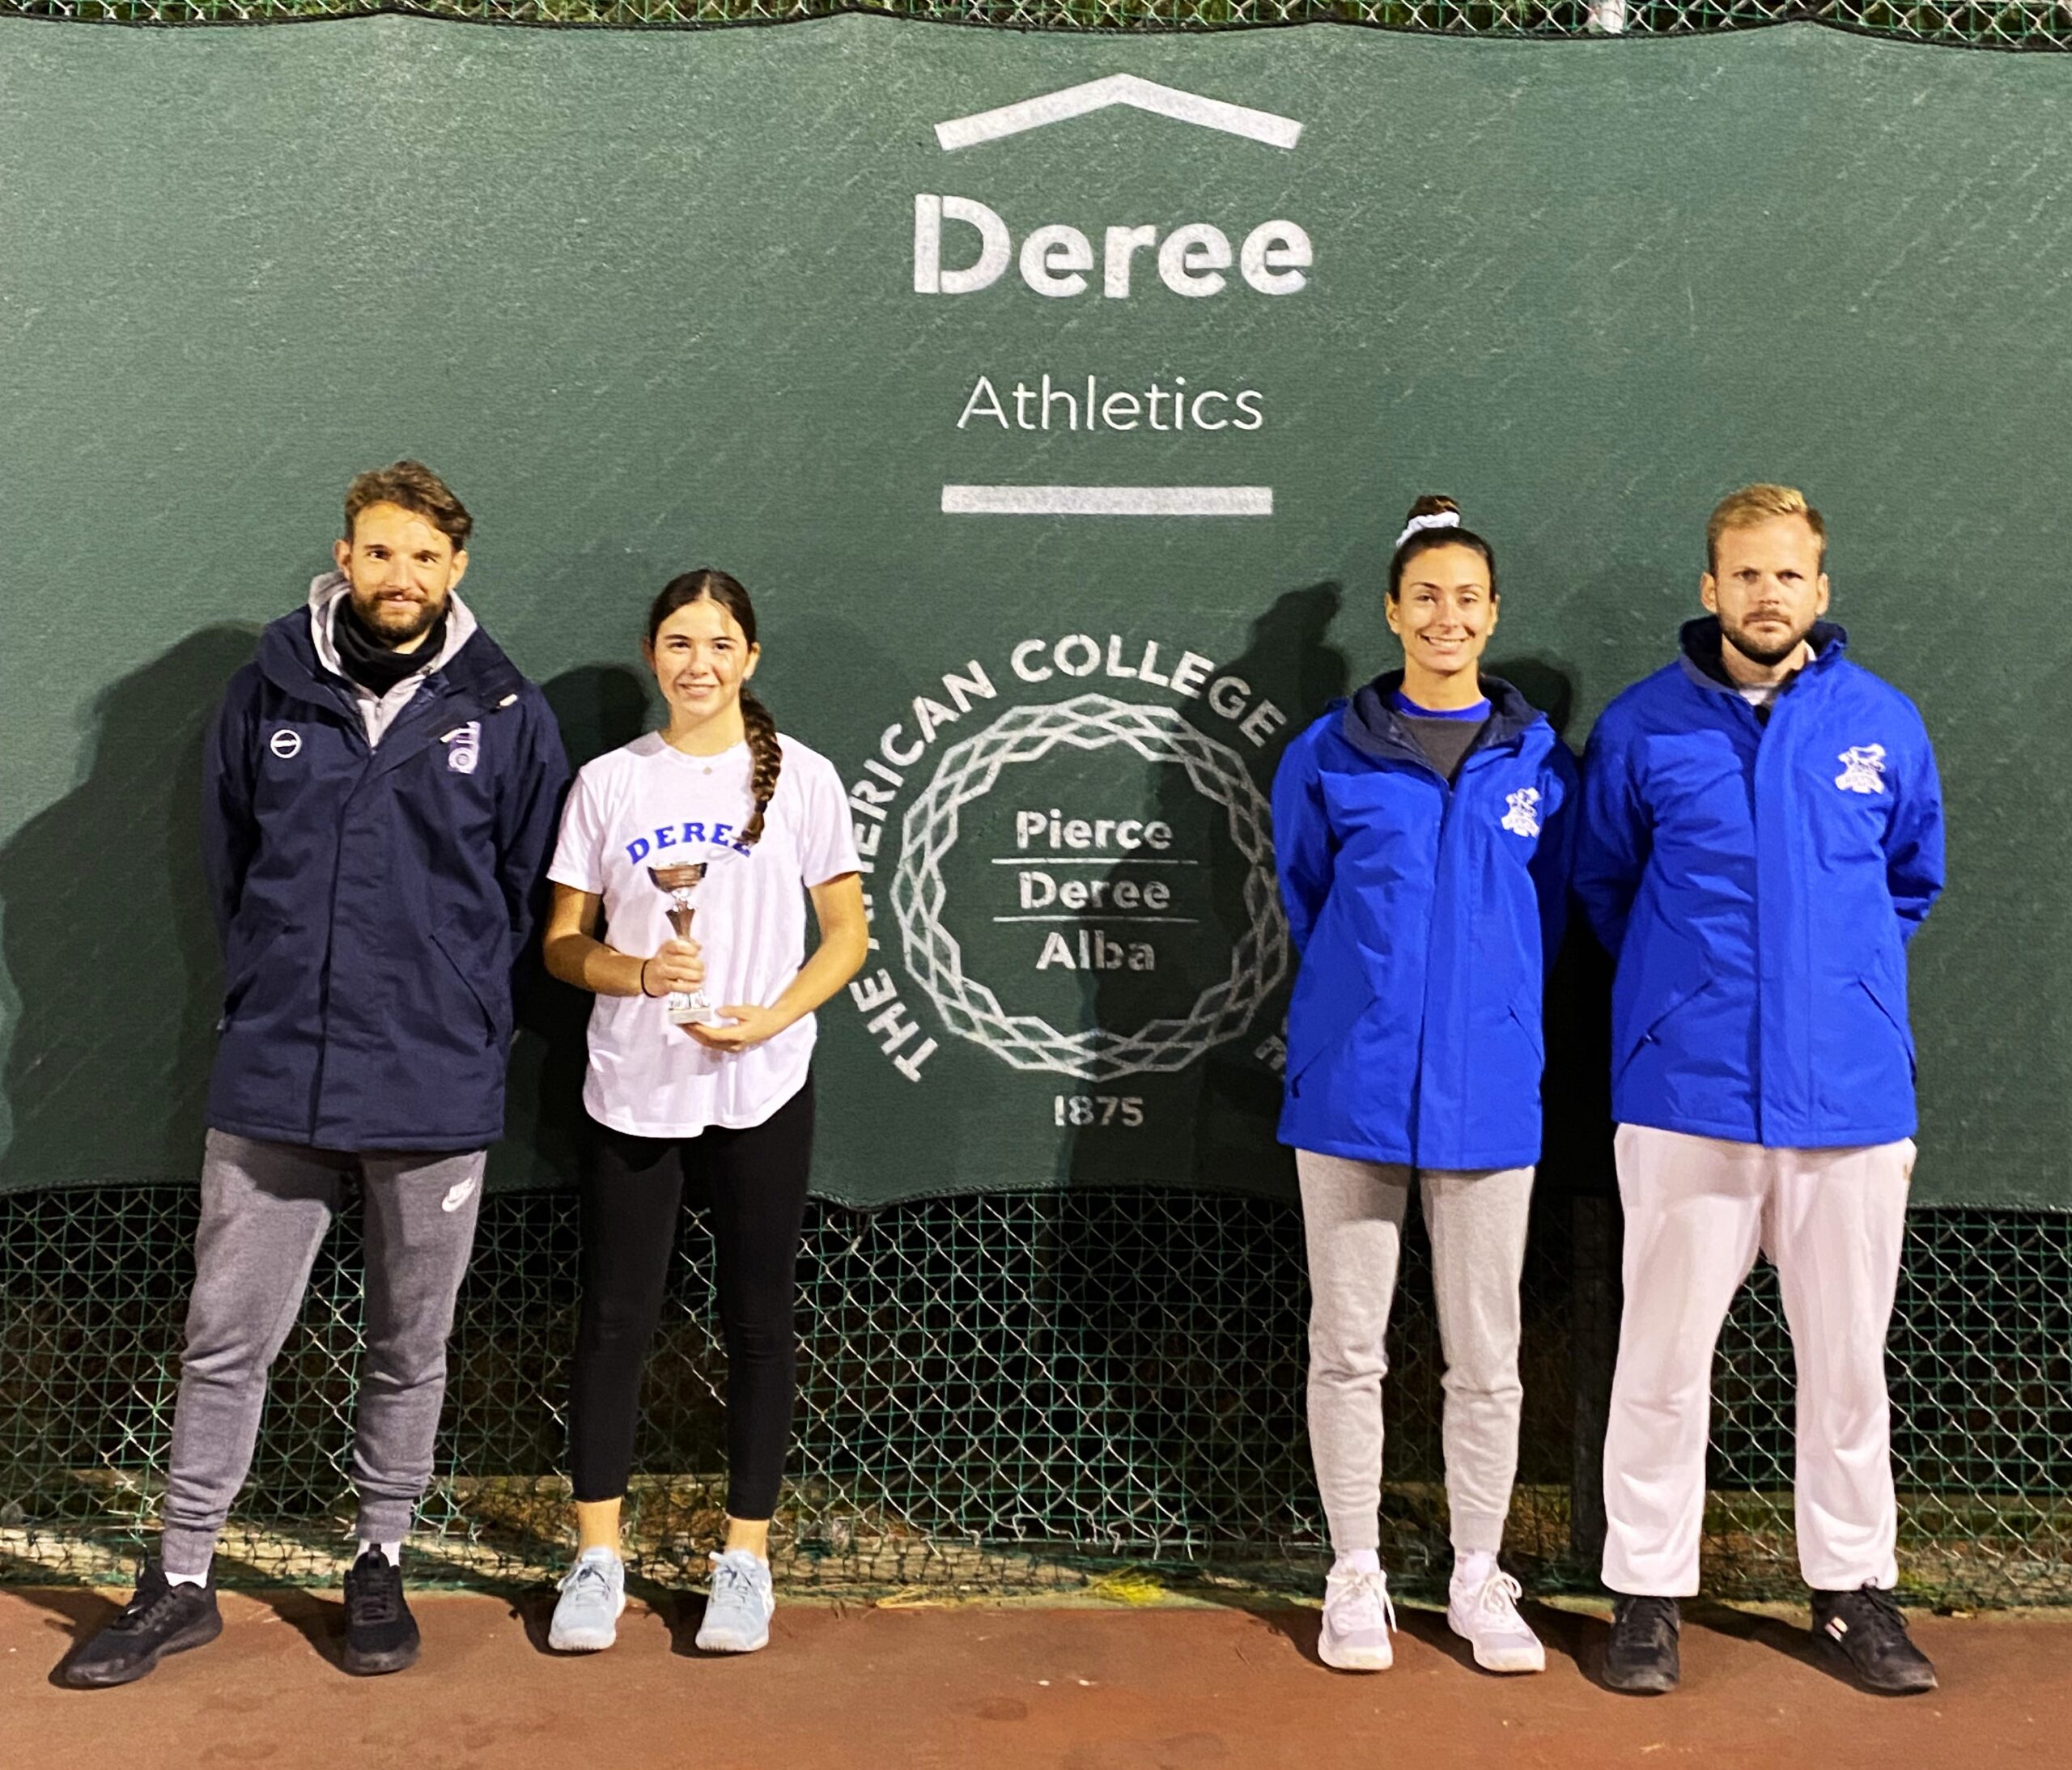 Πρωτιά για την Deree Tennis Academy στο Ε3 Open Πανελλαδικό τουρνουά τένις στη Βάρη.